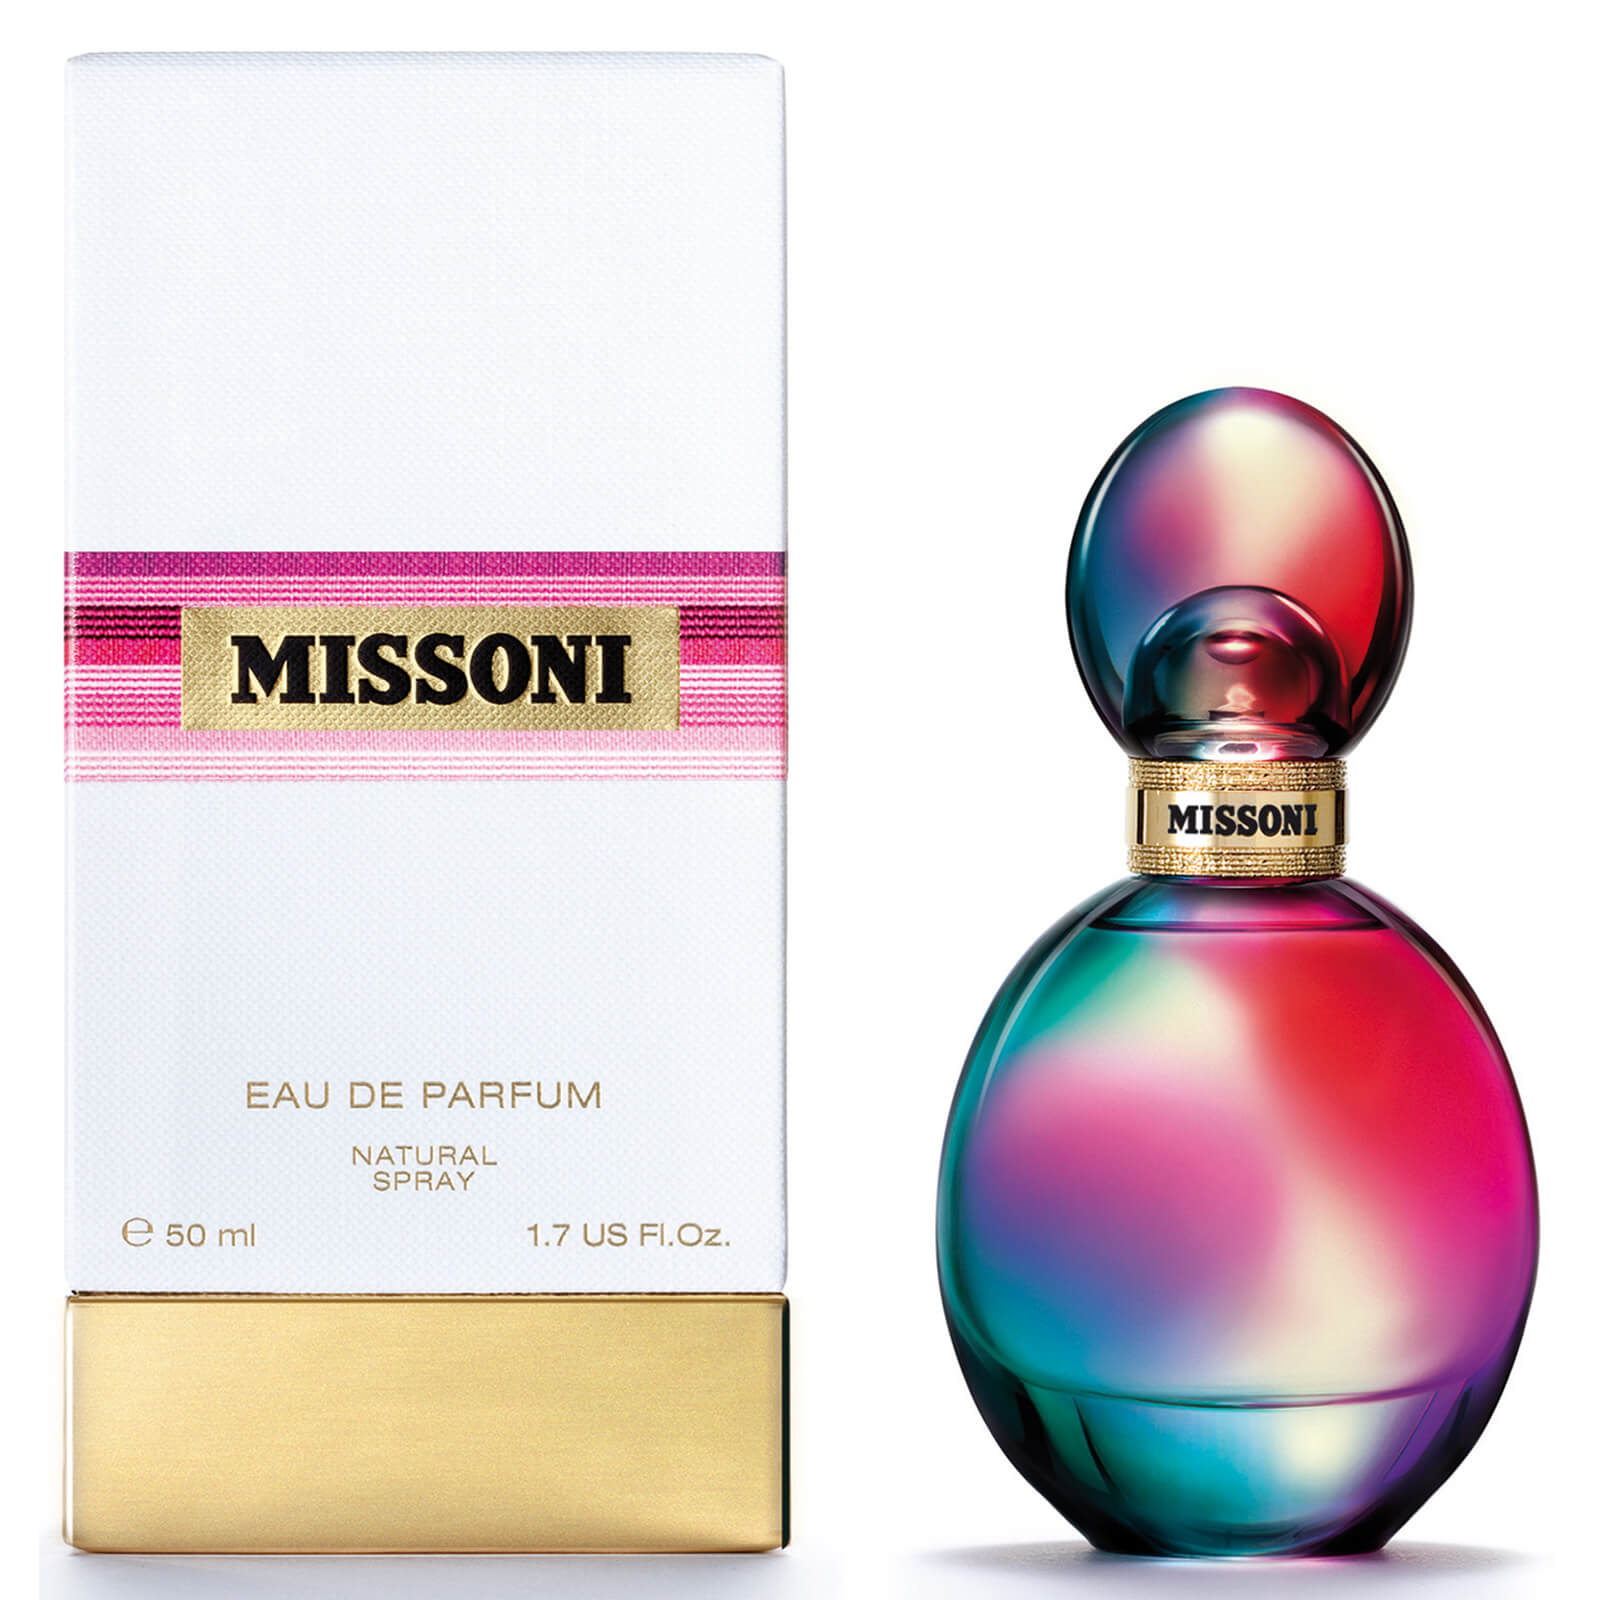 Missoni Eau de Parfum de Missoni (50 ml)